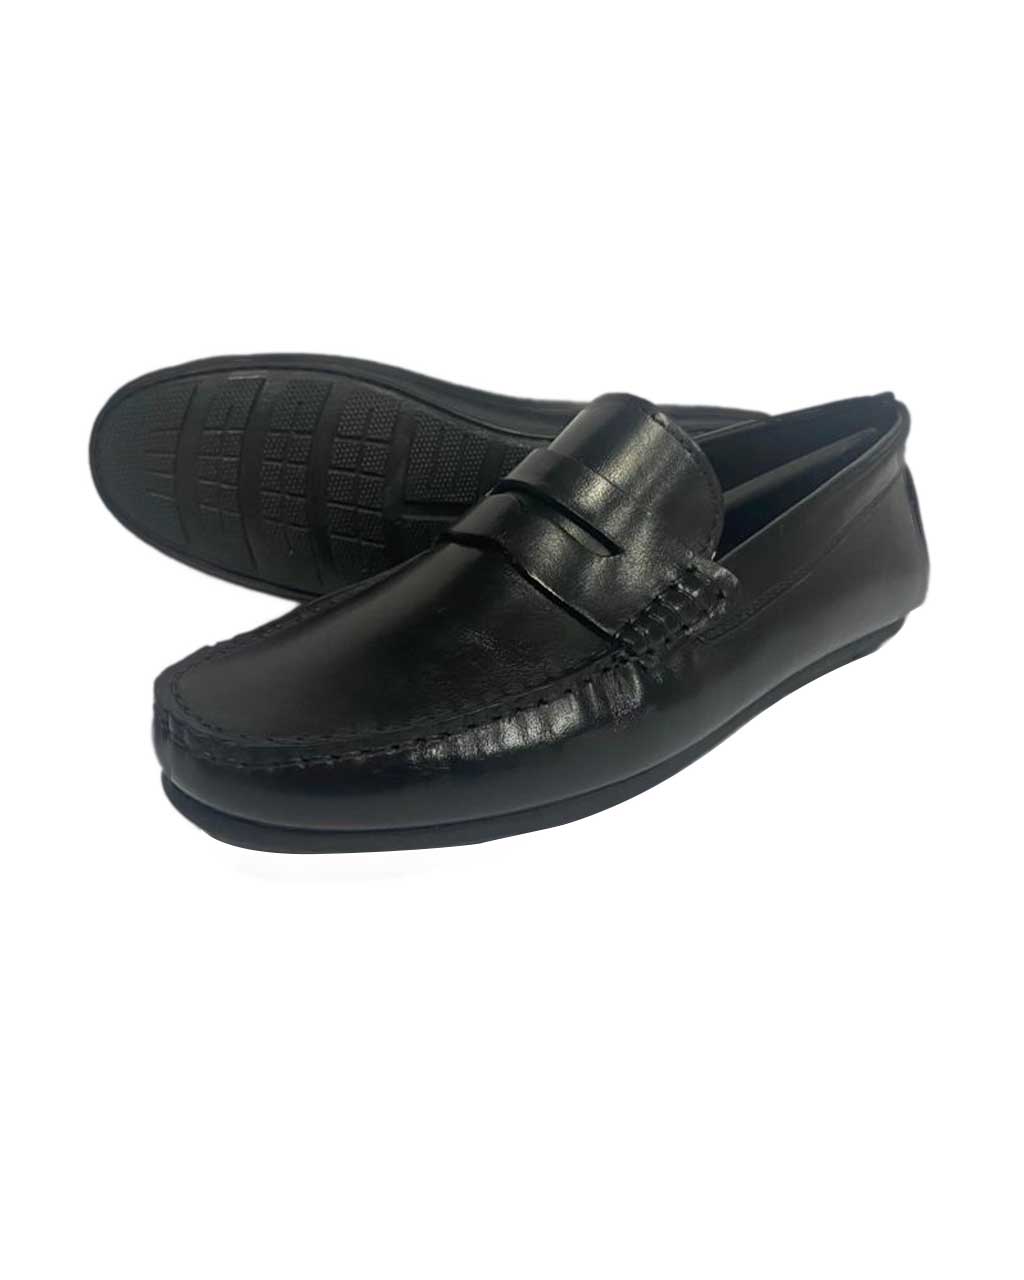 Men’s Formal Leather Shoe - brandwin